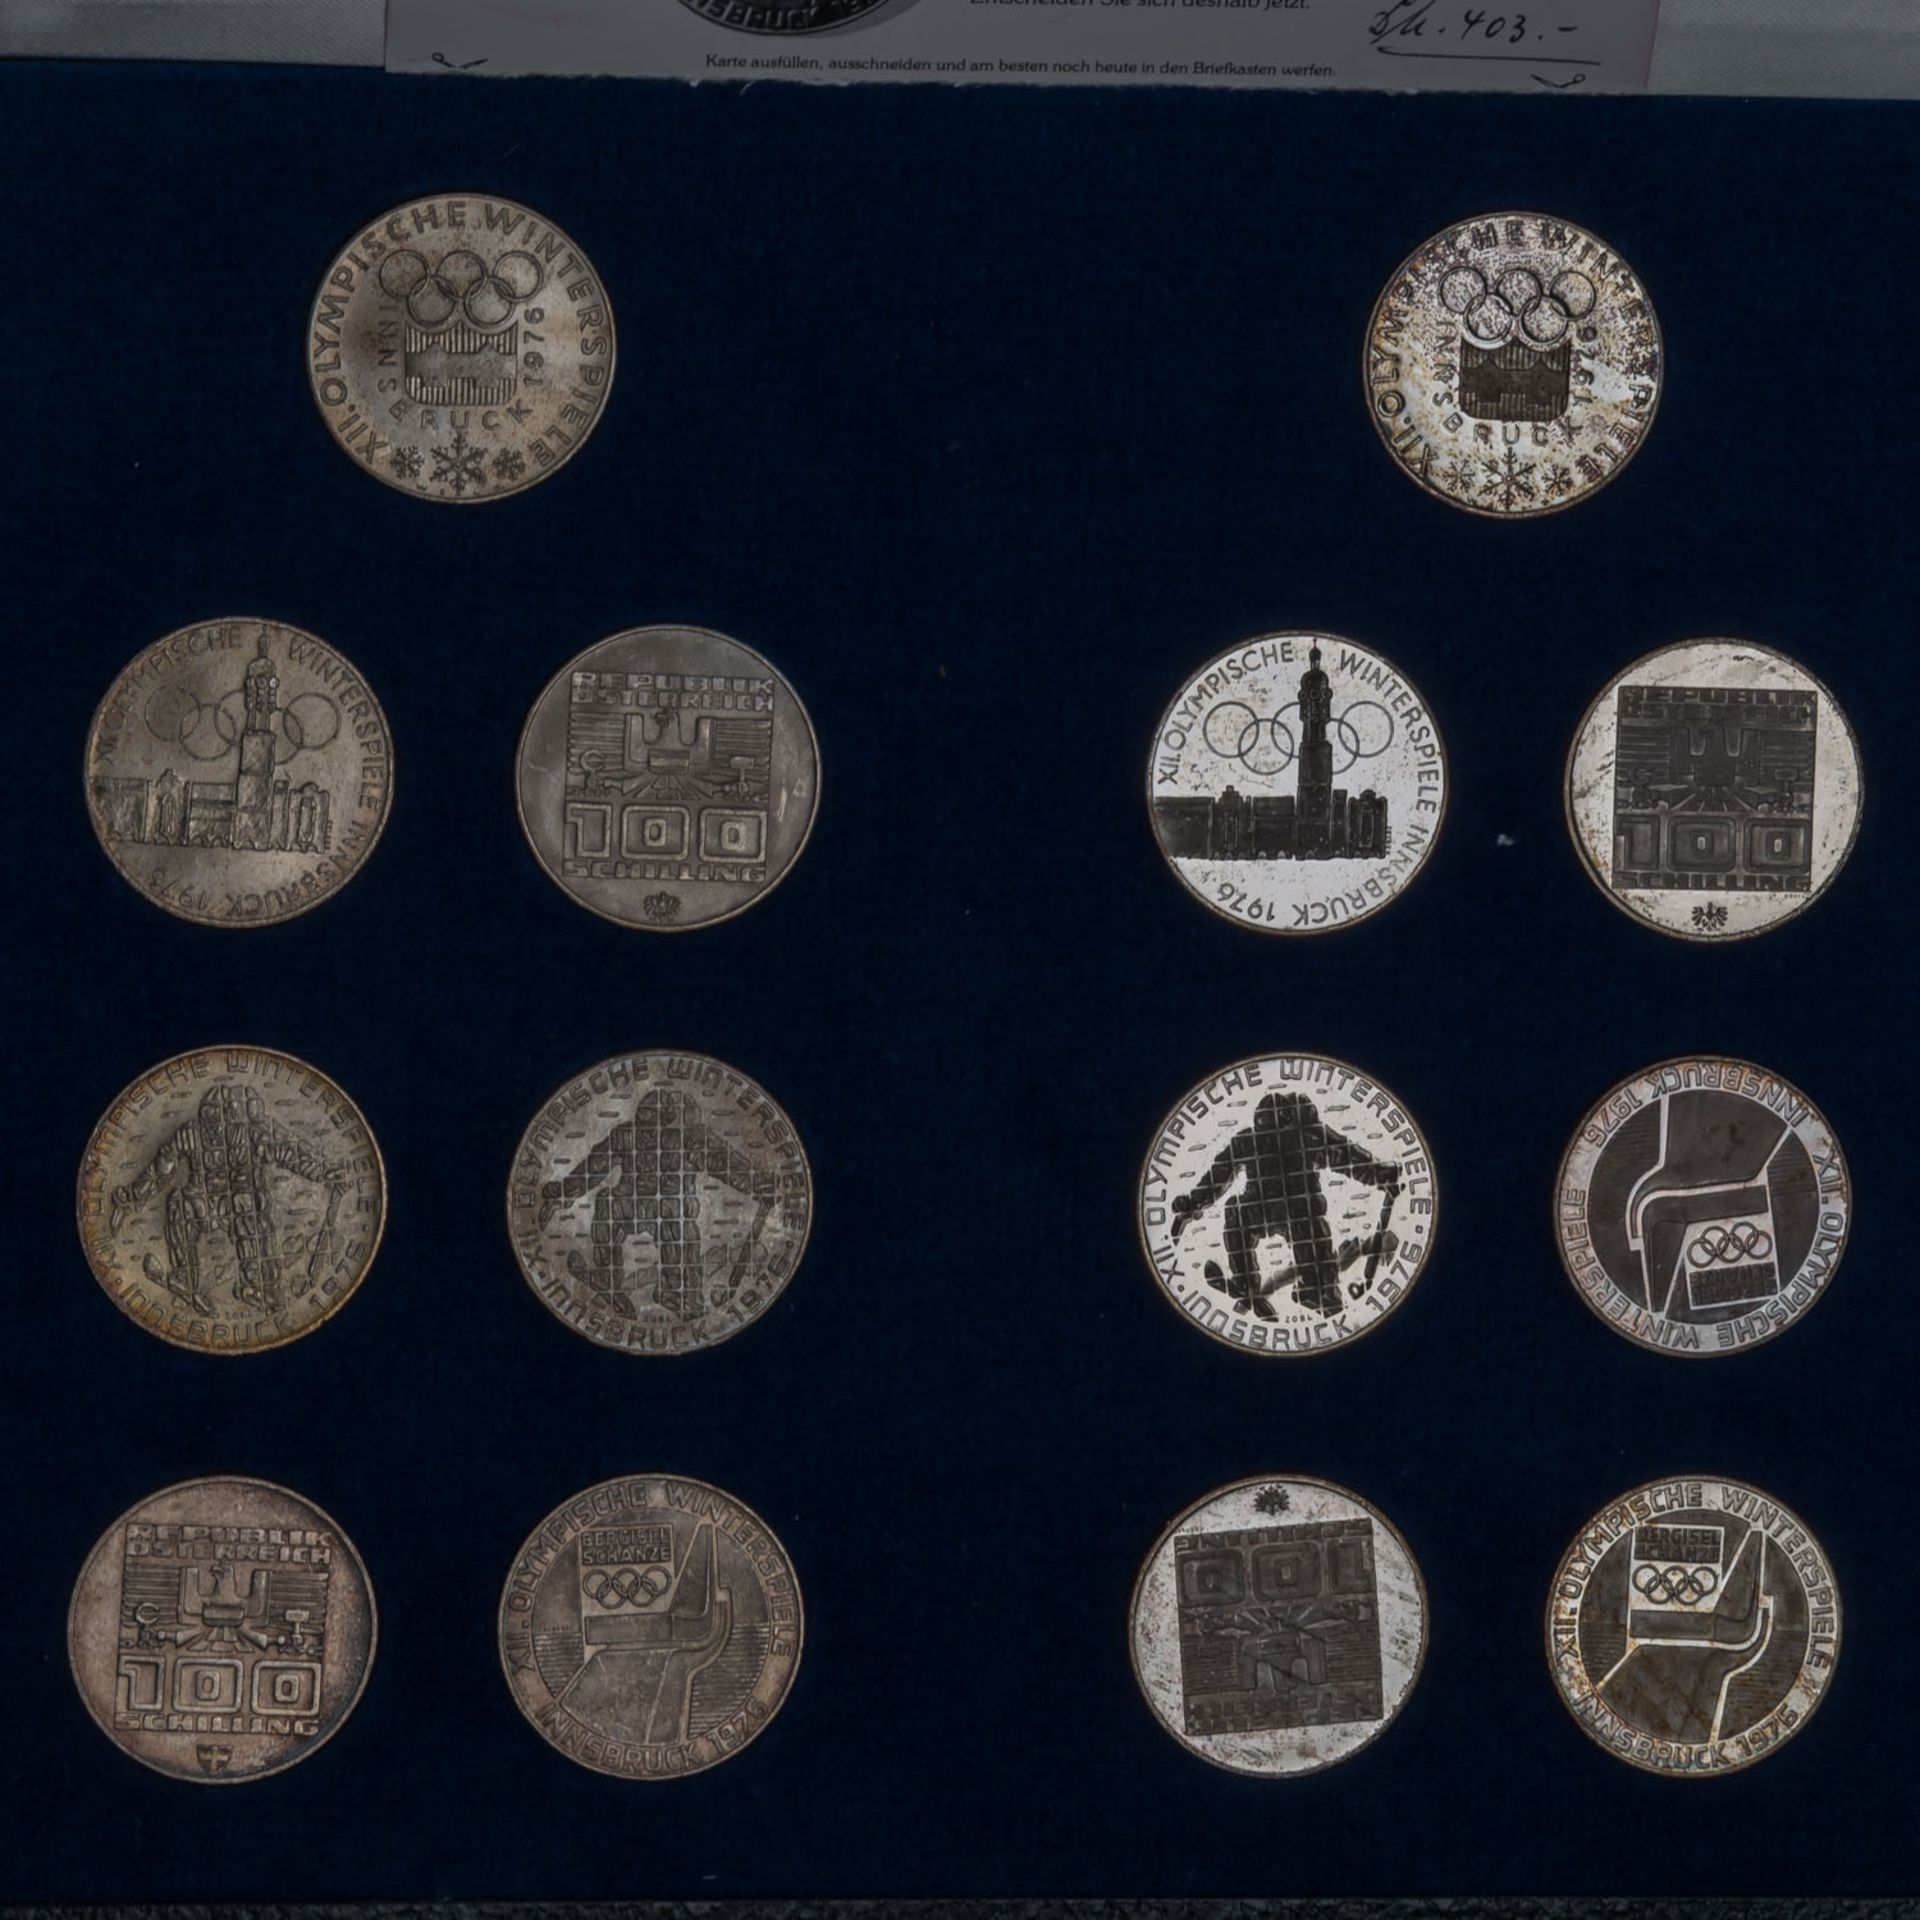 Münzen und Medaillen, - Bild 2 aus 4